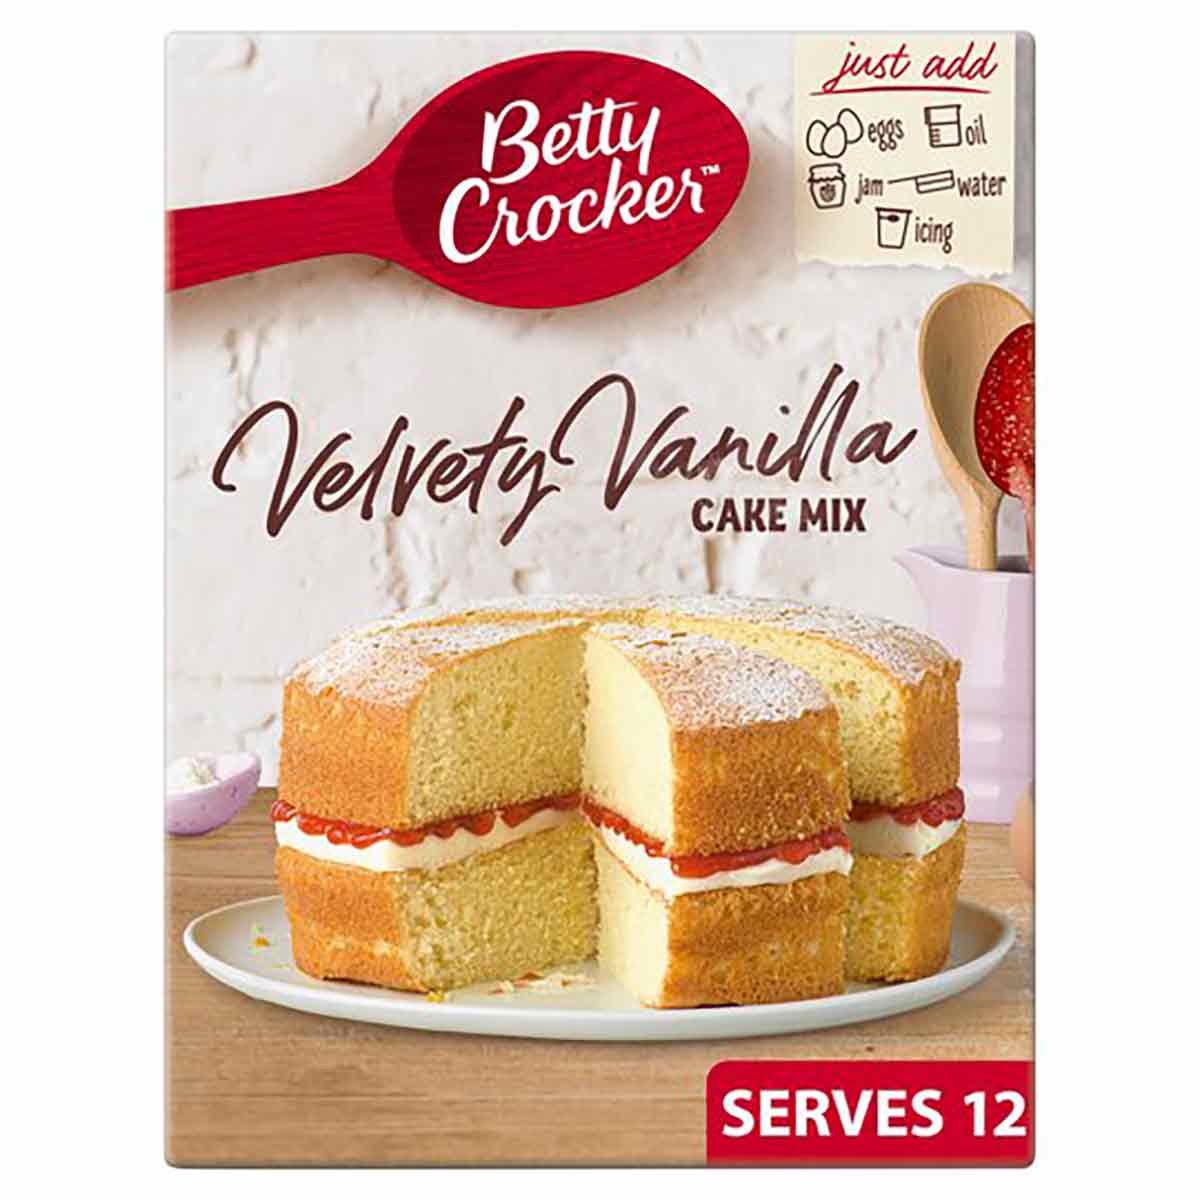 Box Of Betty Crocker Cake Mix